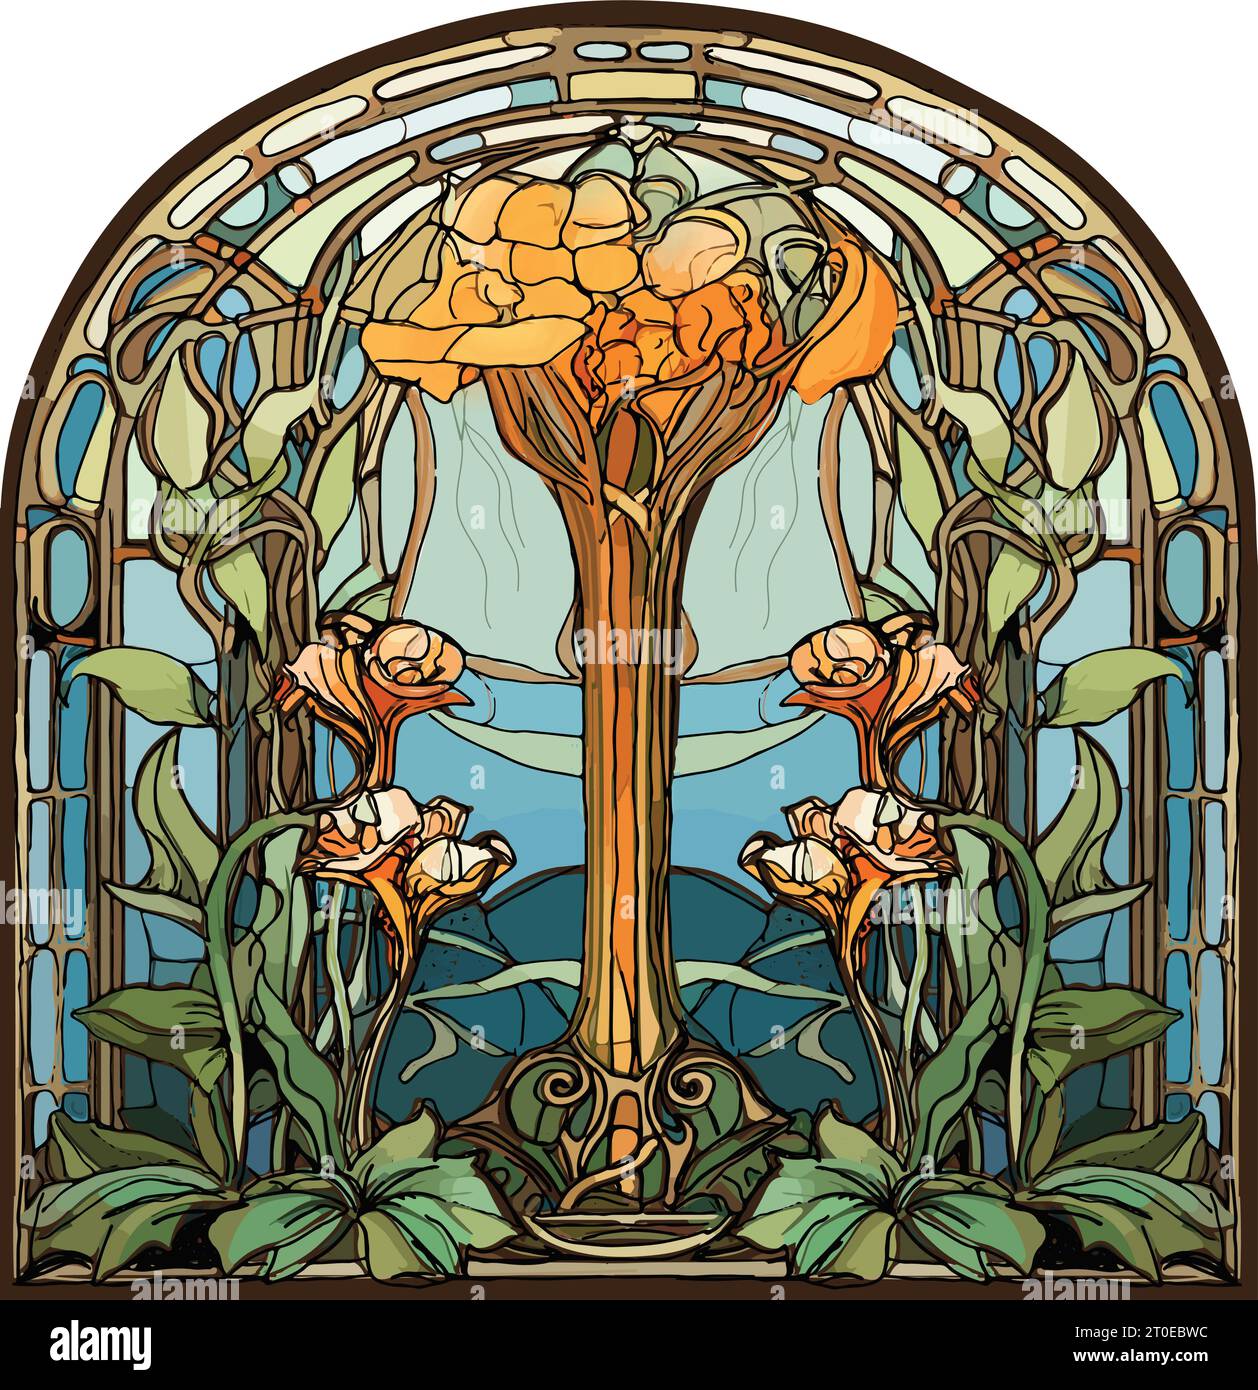 Vetrate in stile art nouveau, motivi floreali, fiori arancioni e gialli, cornice ad arco Illustrazione Vettoriale